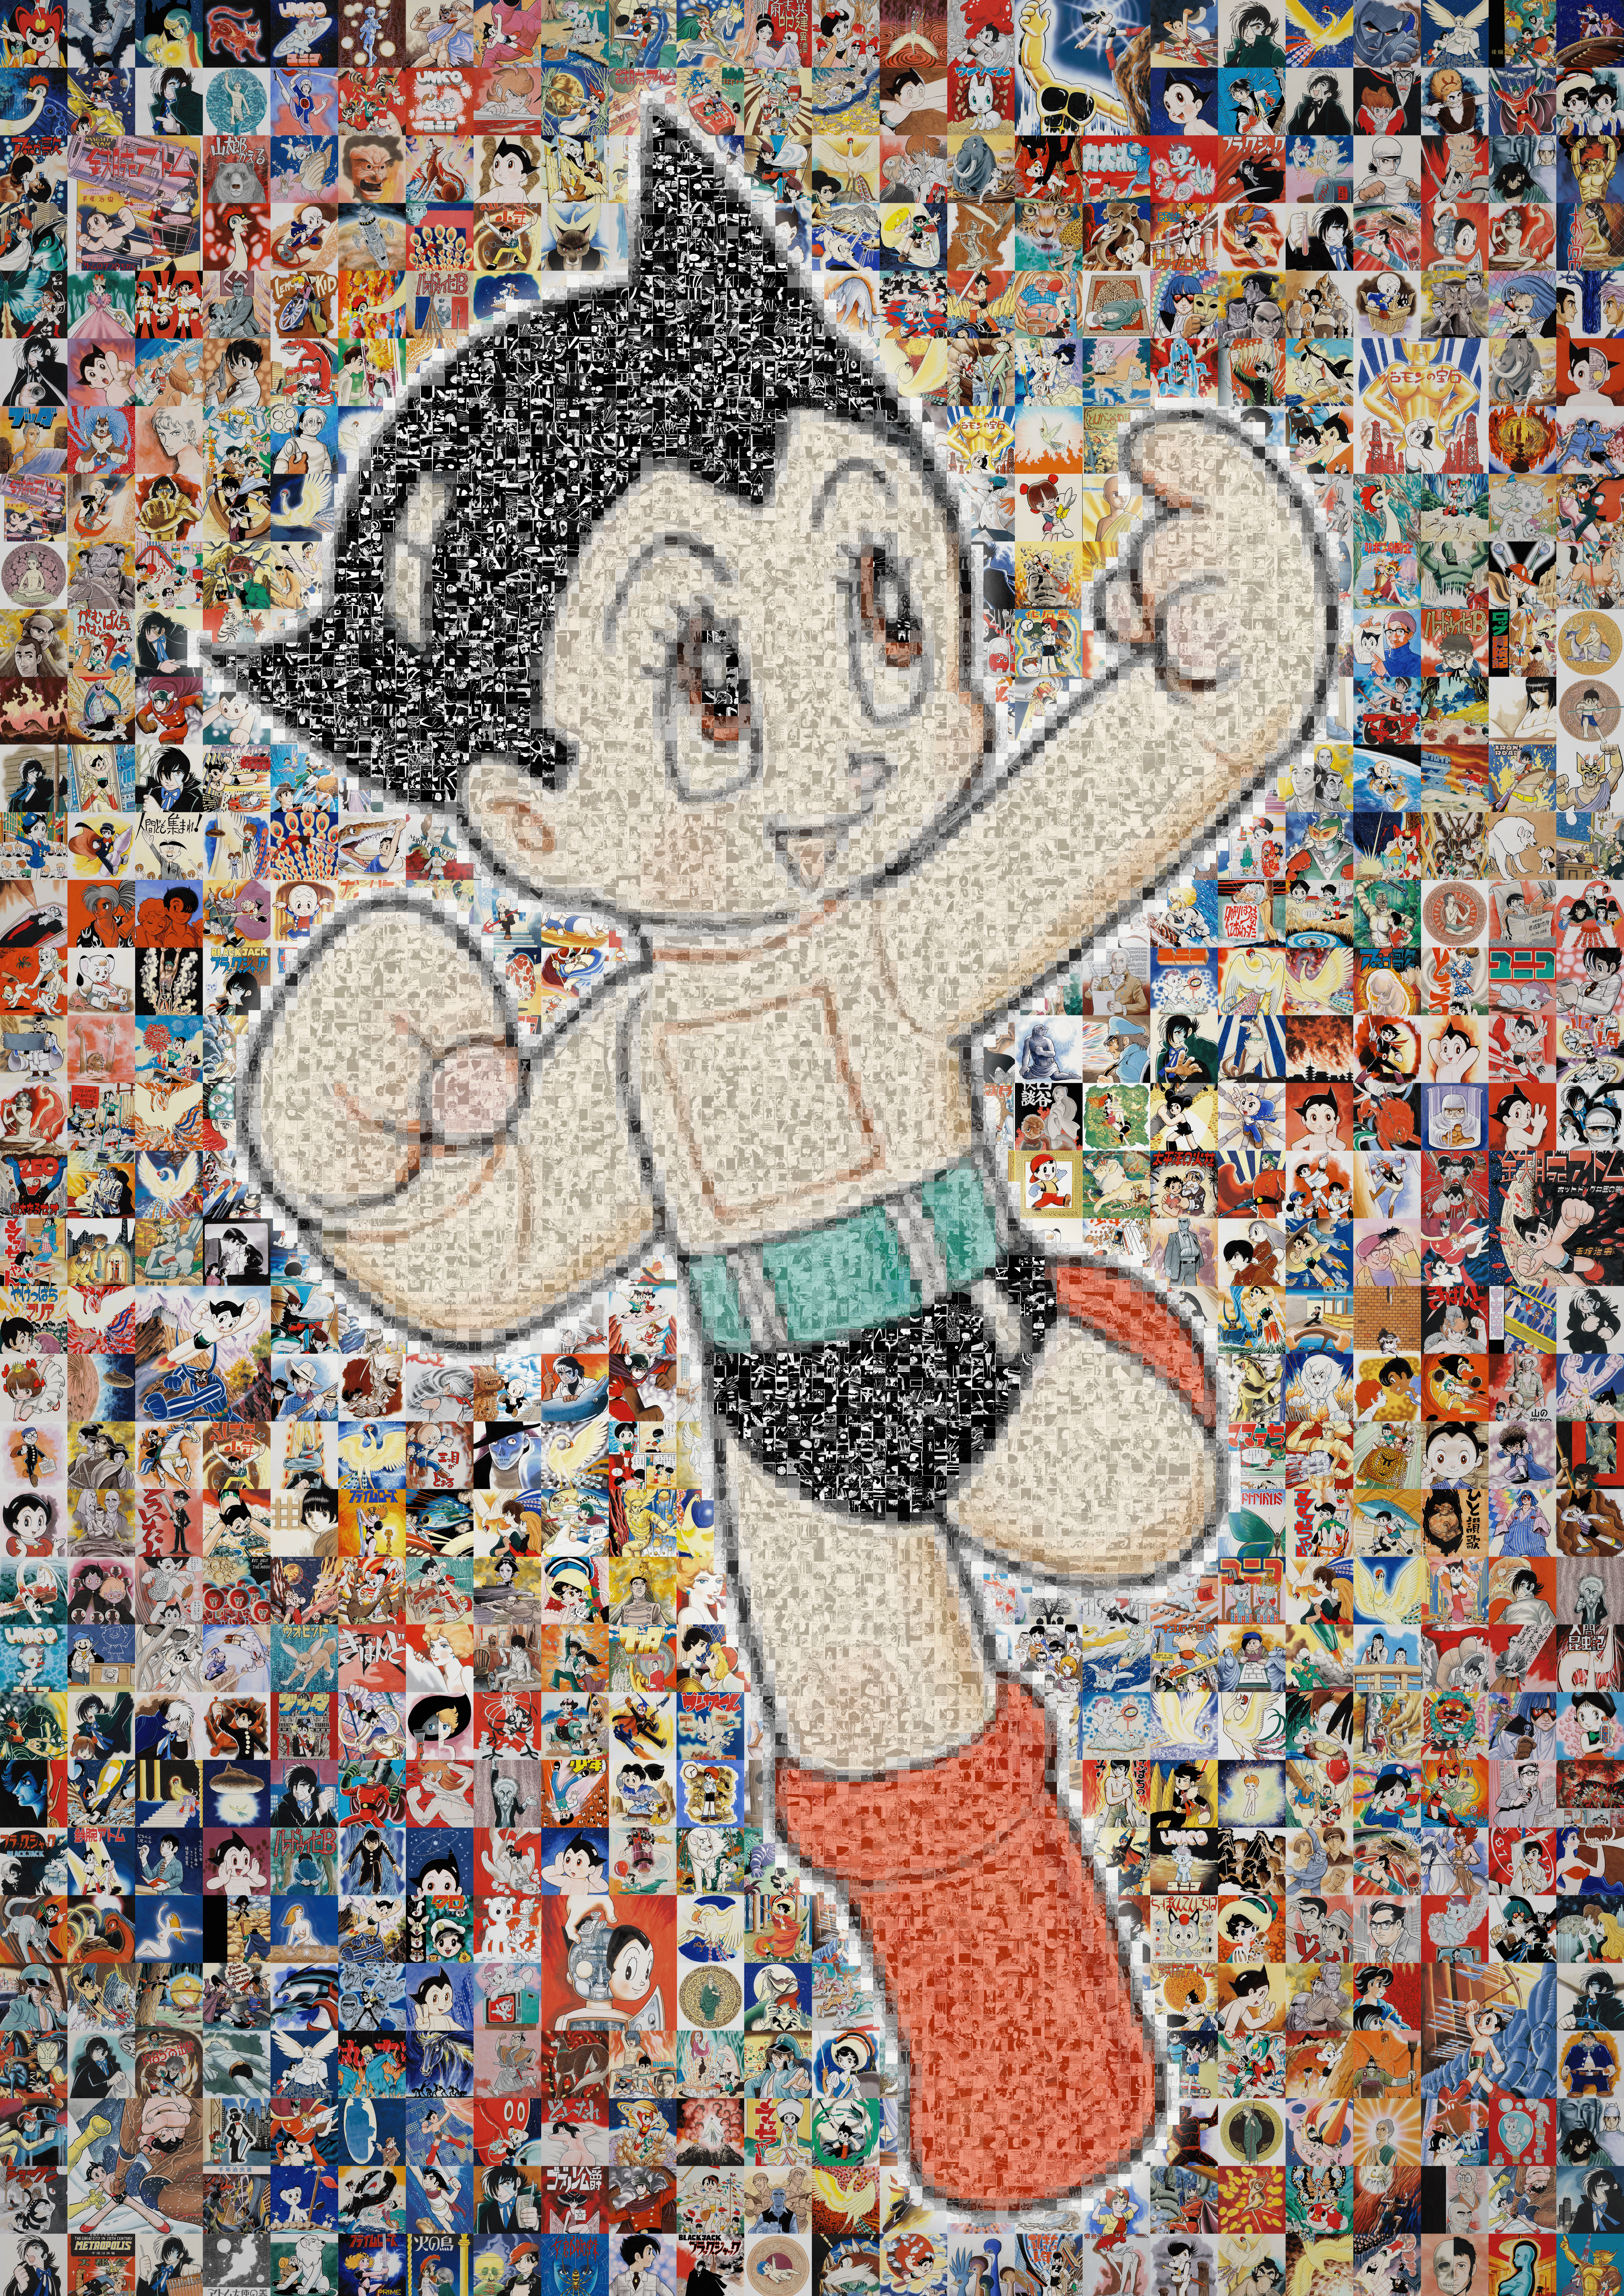 Astro Boy / 鉄腕アトム